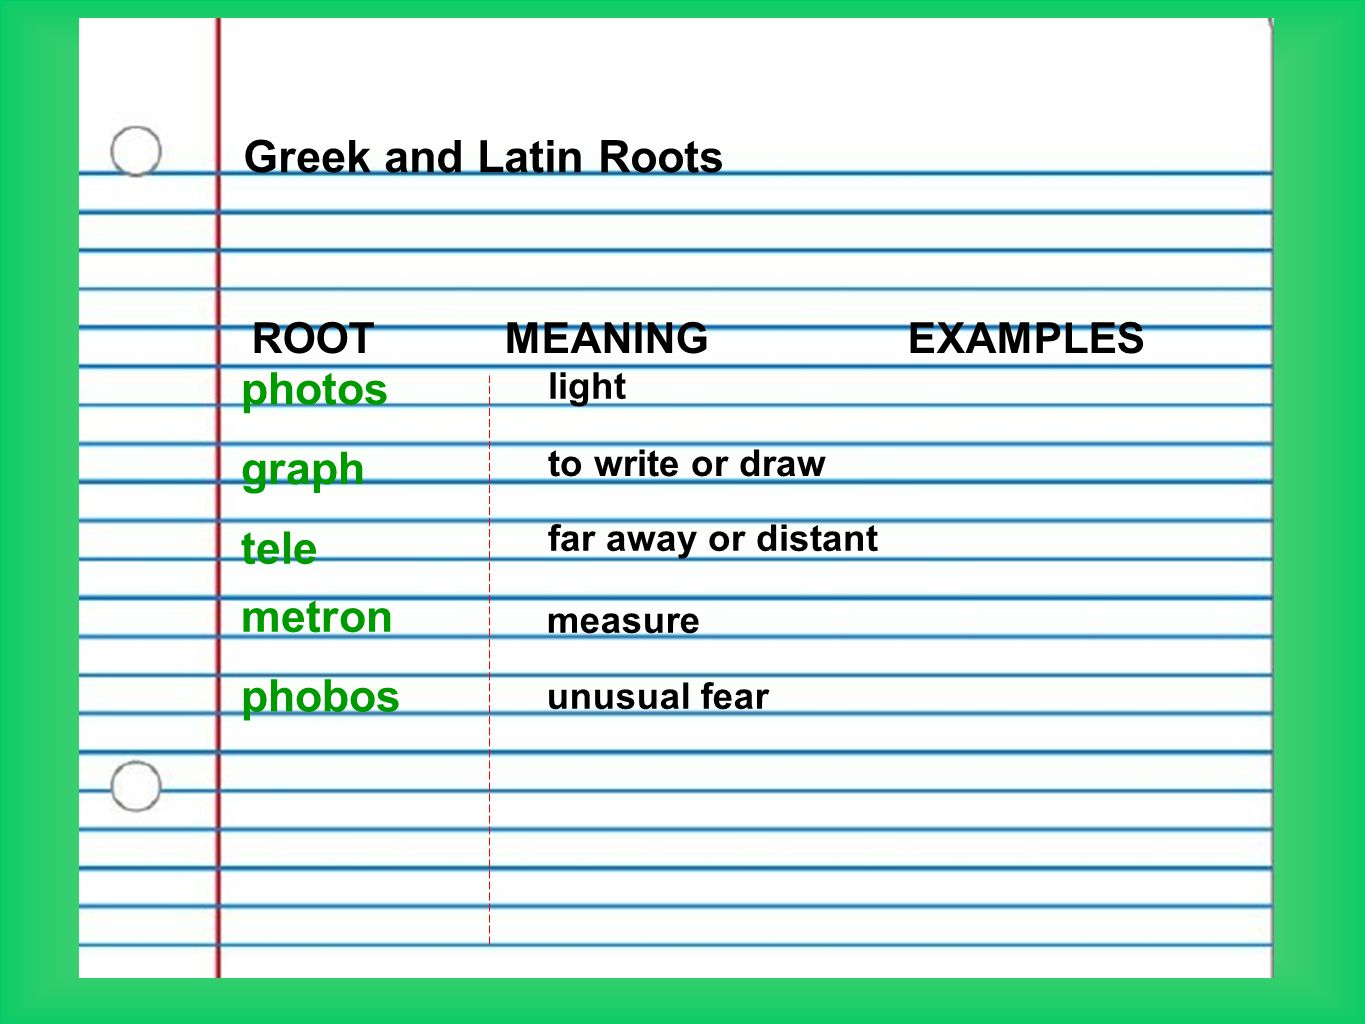 Greek and Latin Roots photos graph tele metron phobos